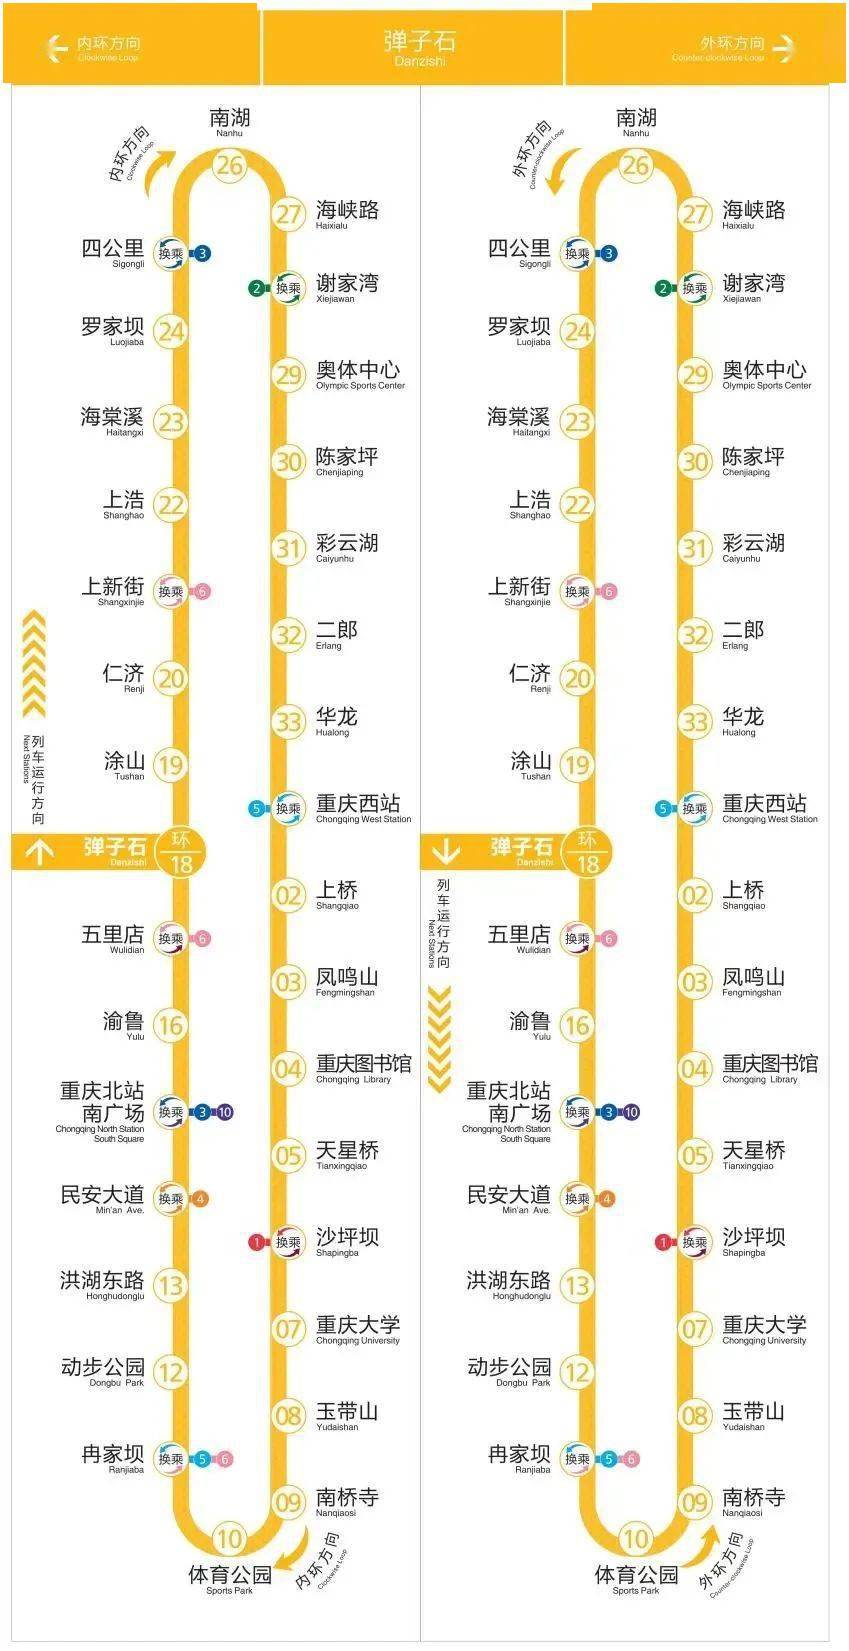 上海地铁15号线